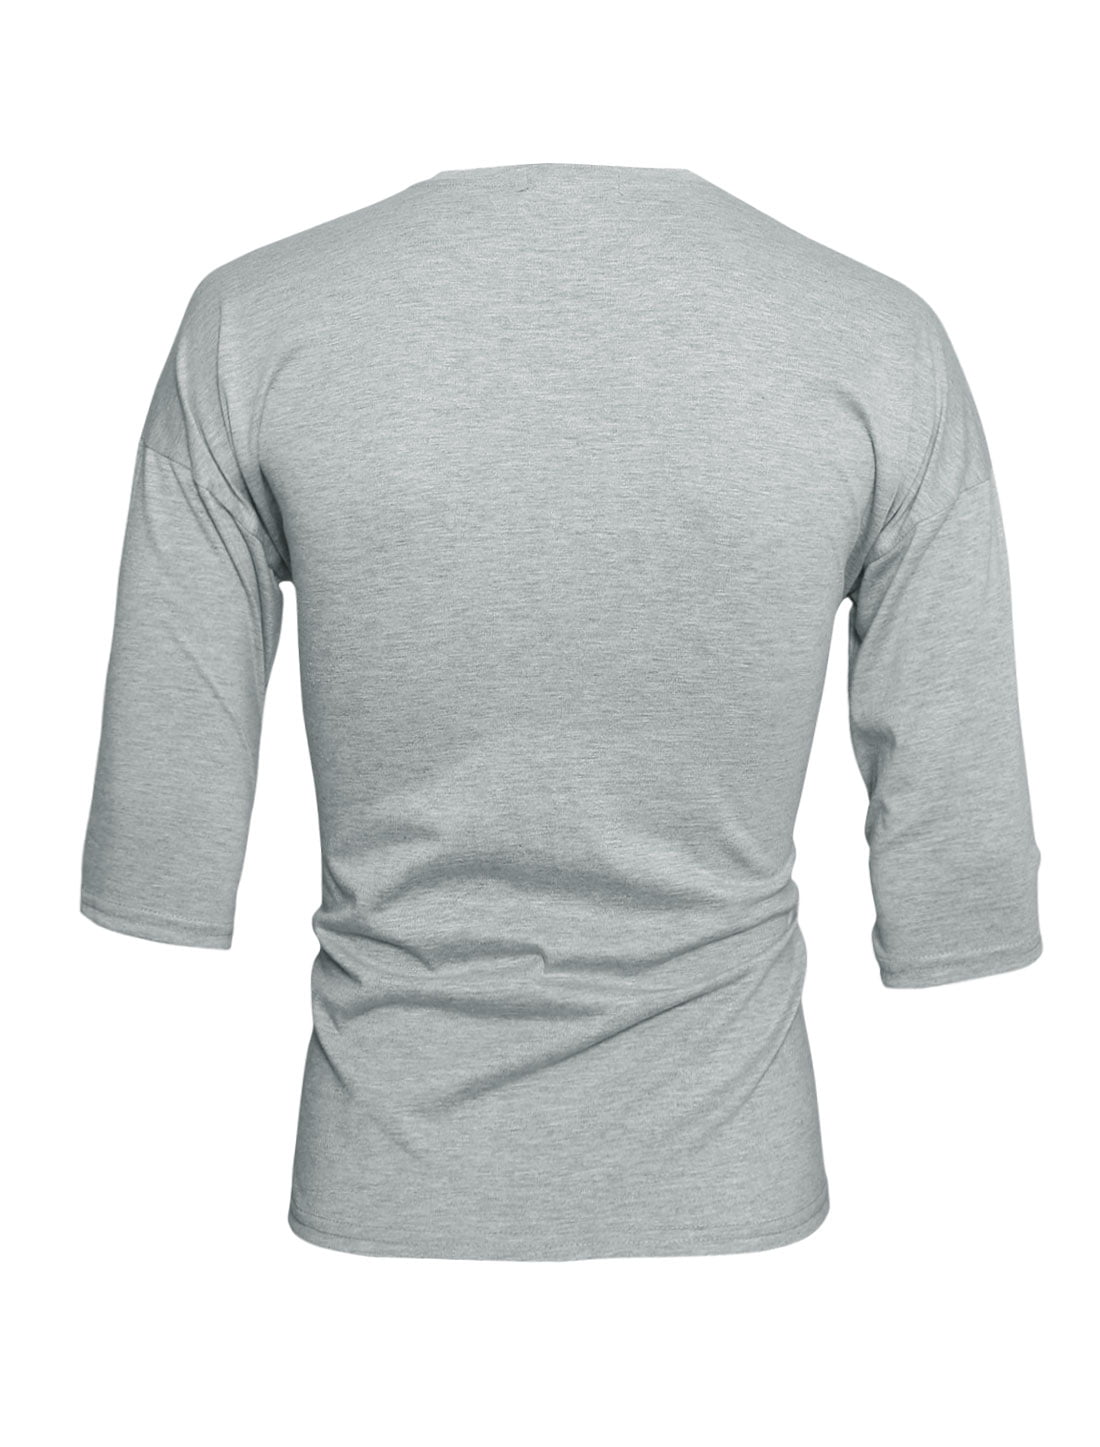 Men's Crew Neck 3/4 Sleeves Drop Shoulder Tee Shirt Gray (Size M / 38 ...